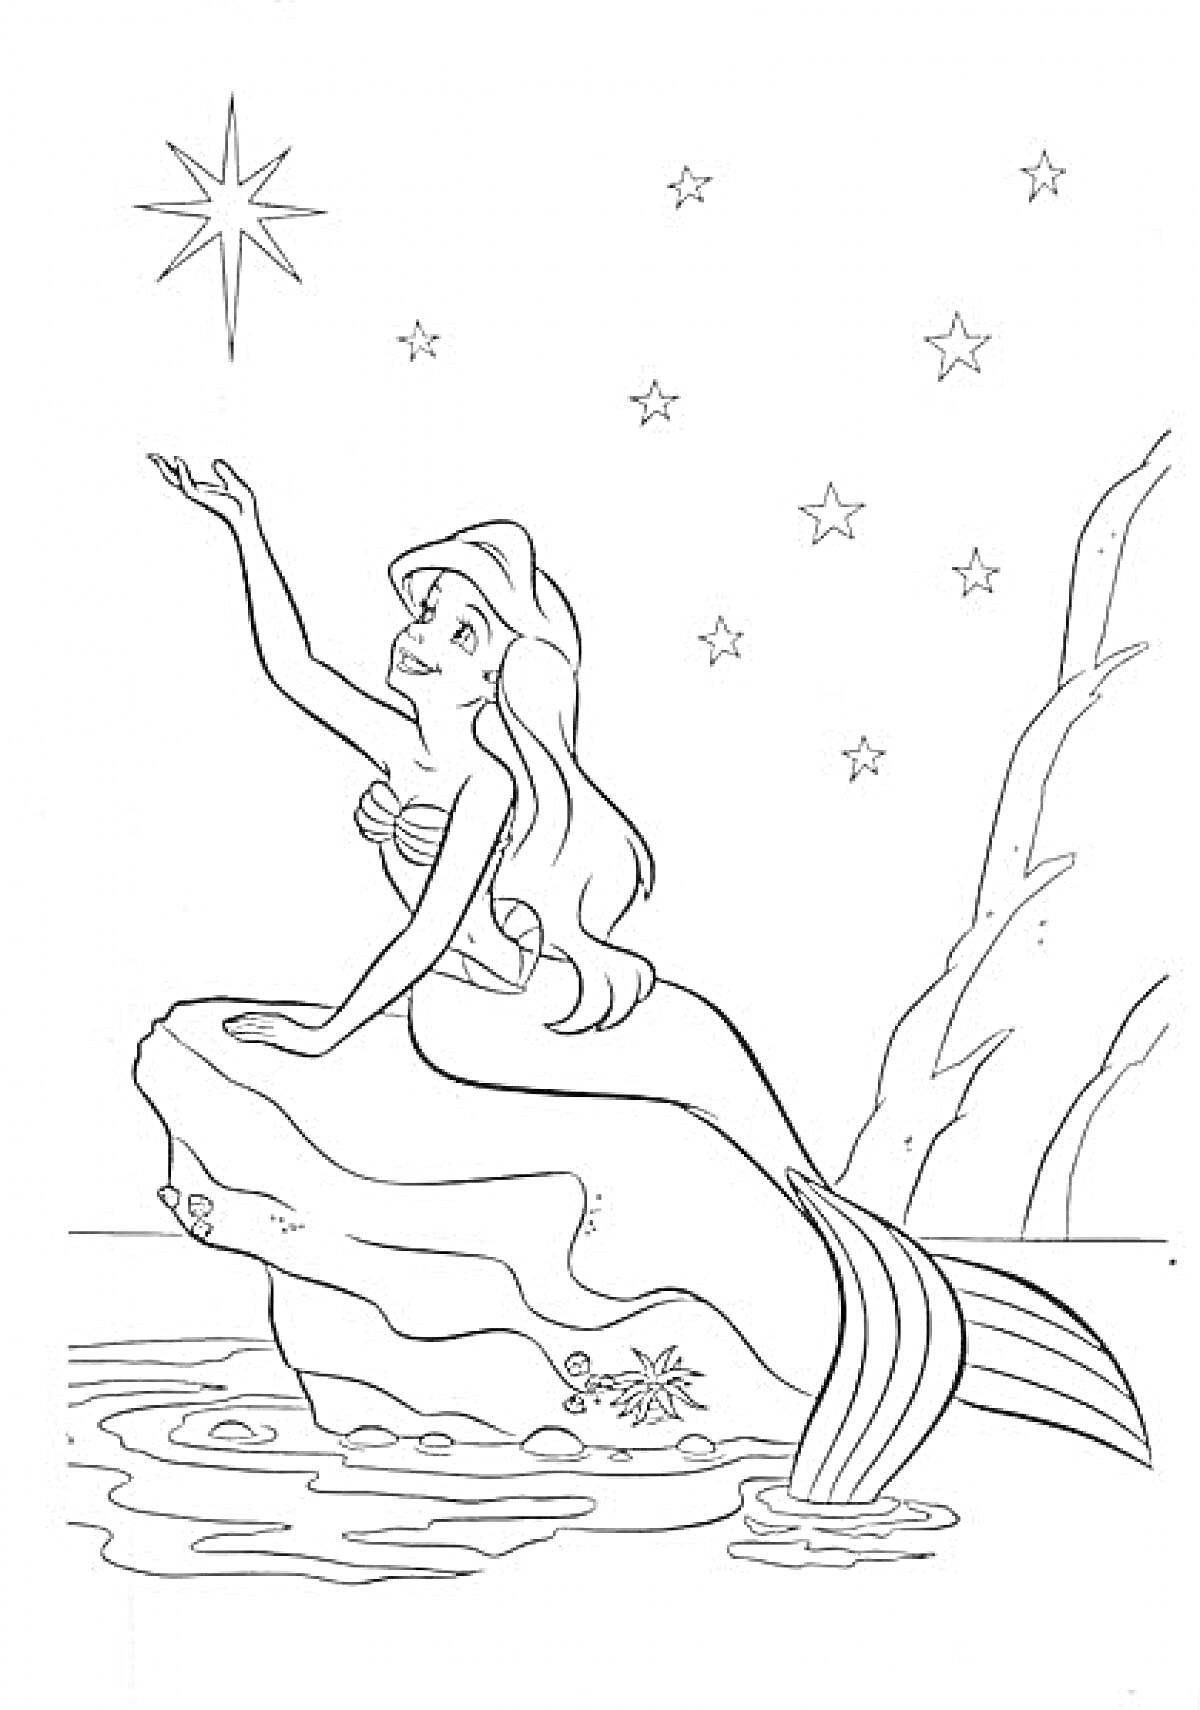 Раскраска Ариэль на камне с вытянутой рукой, море, звёзды, дерево